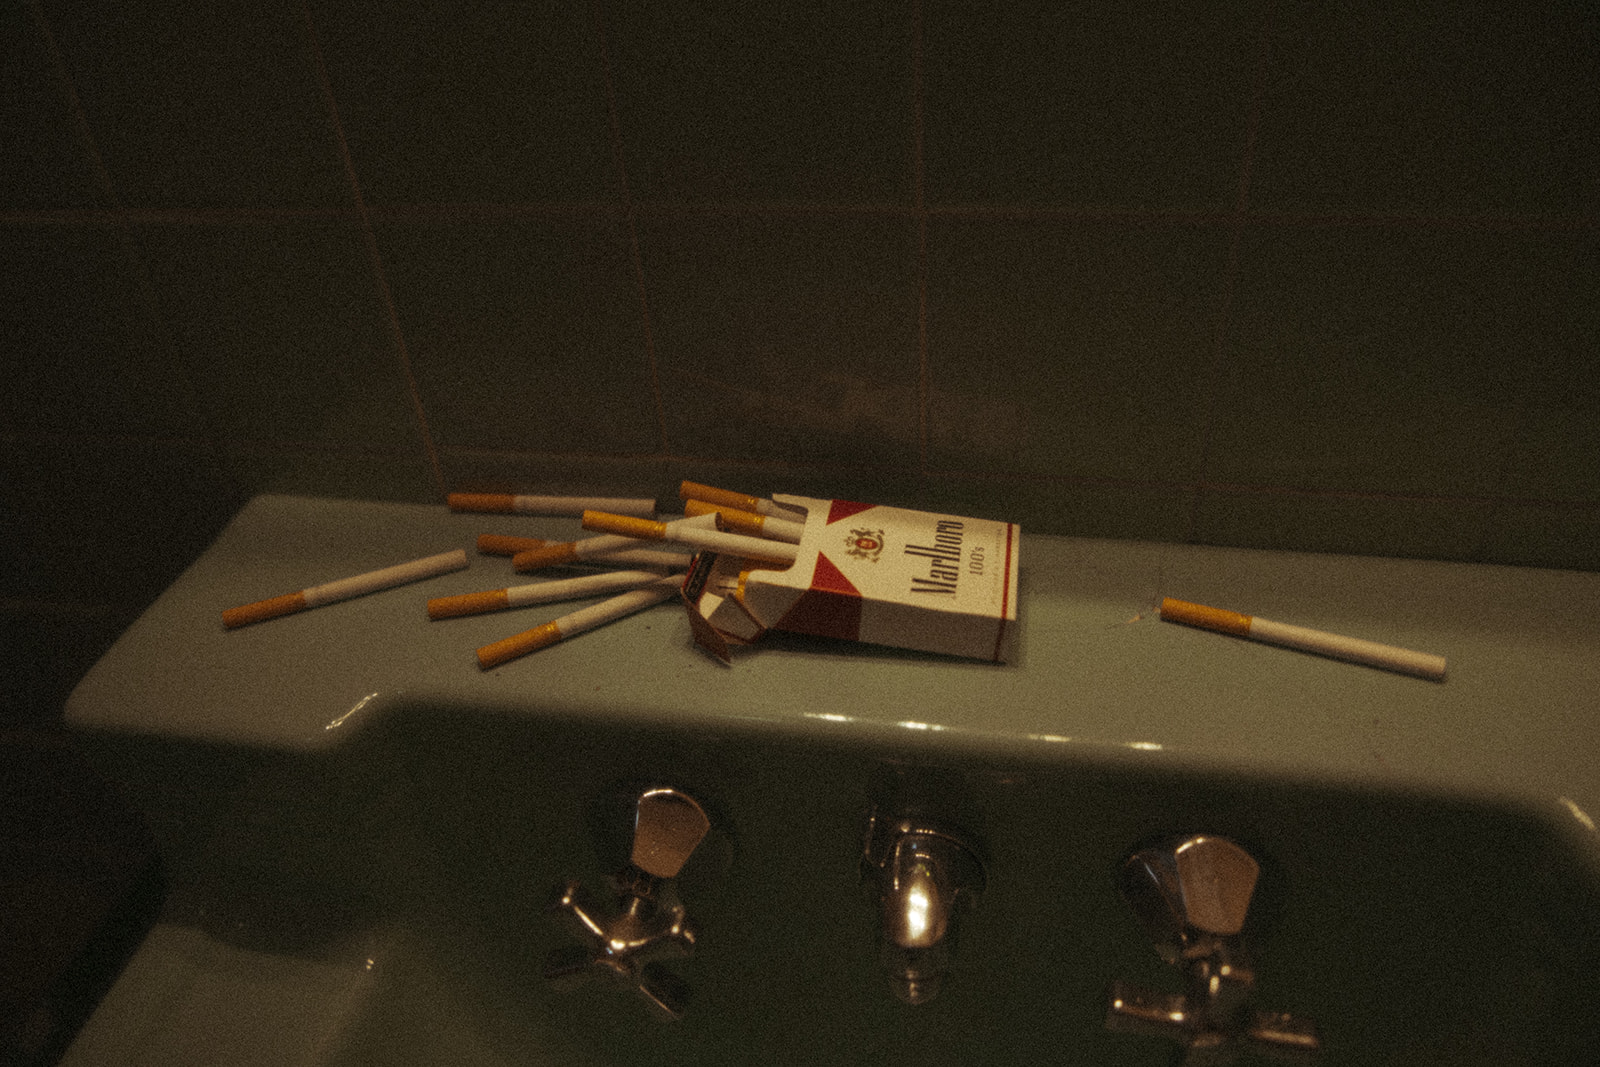 Marlboro cigarettes' on a bathroom sink